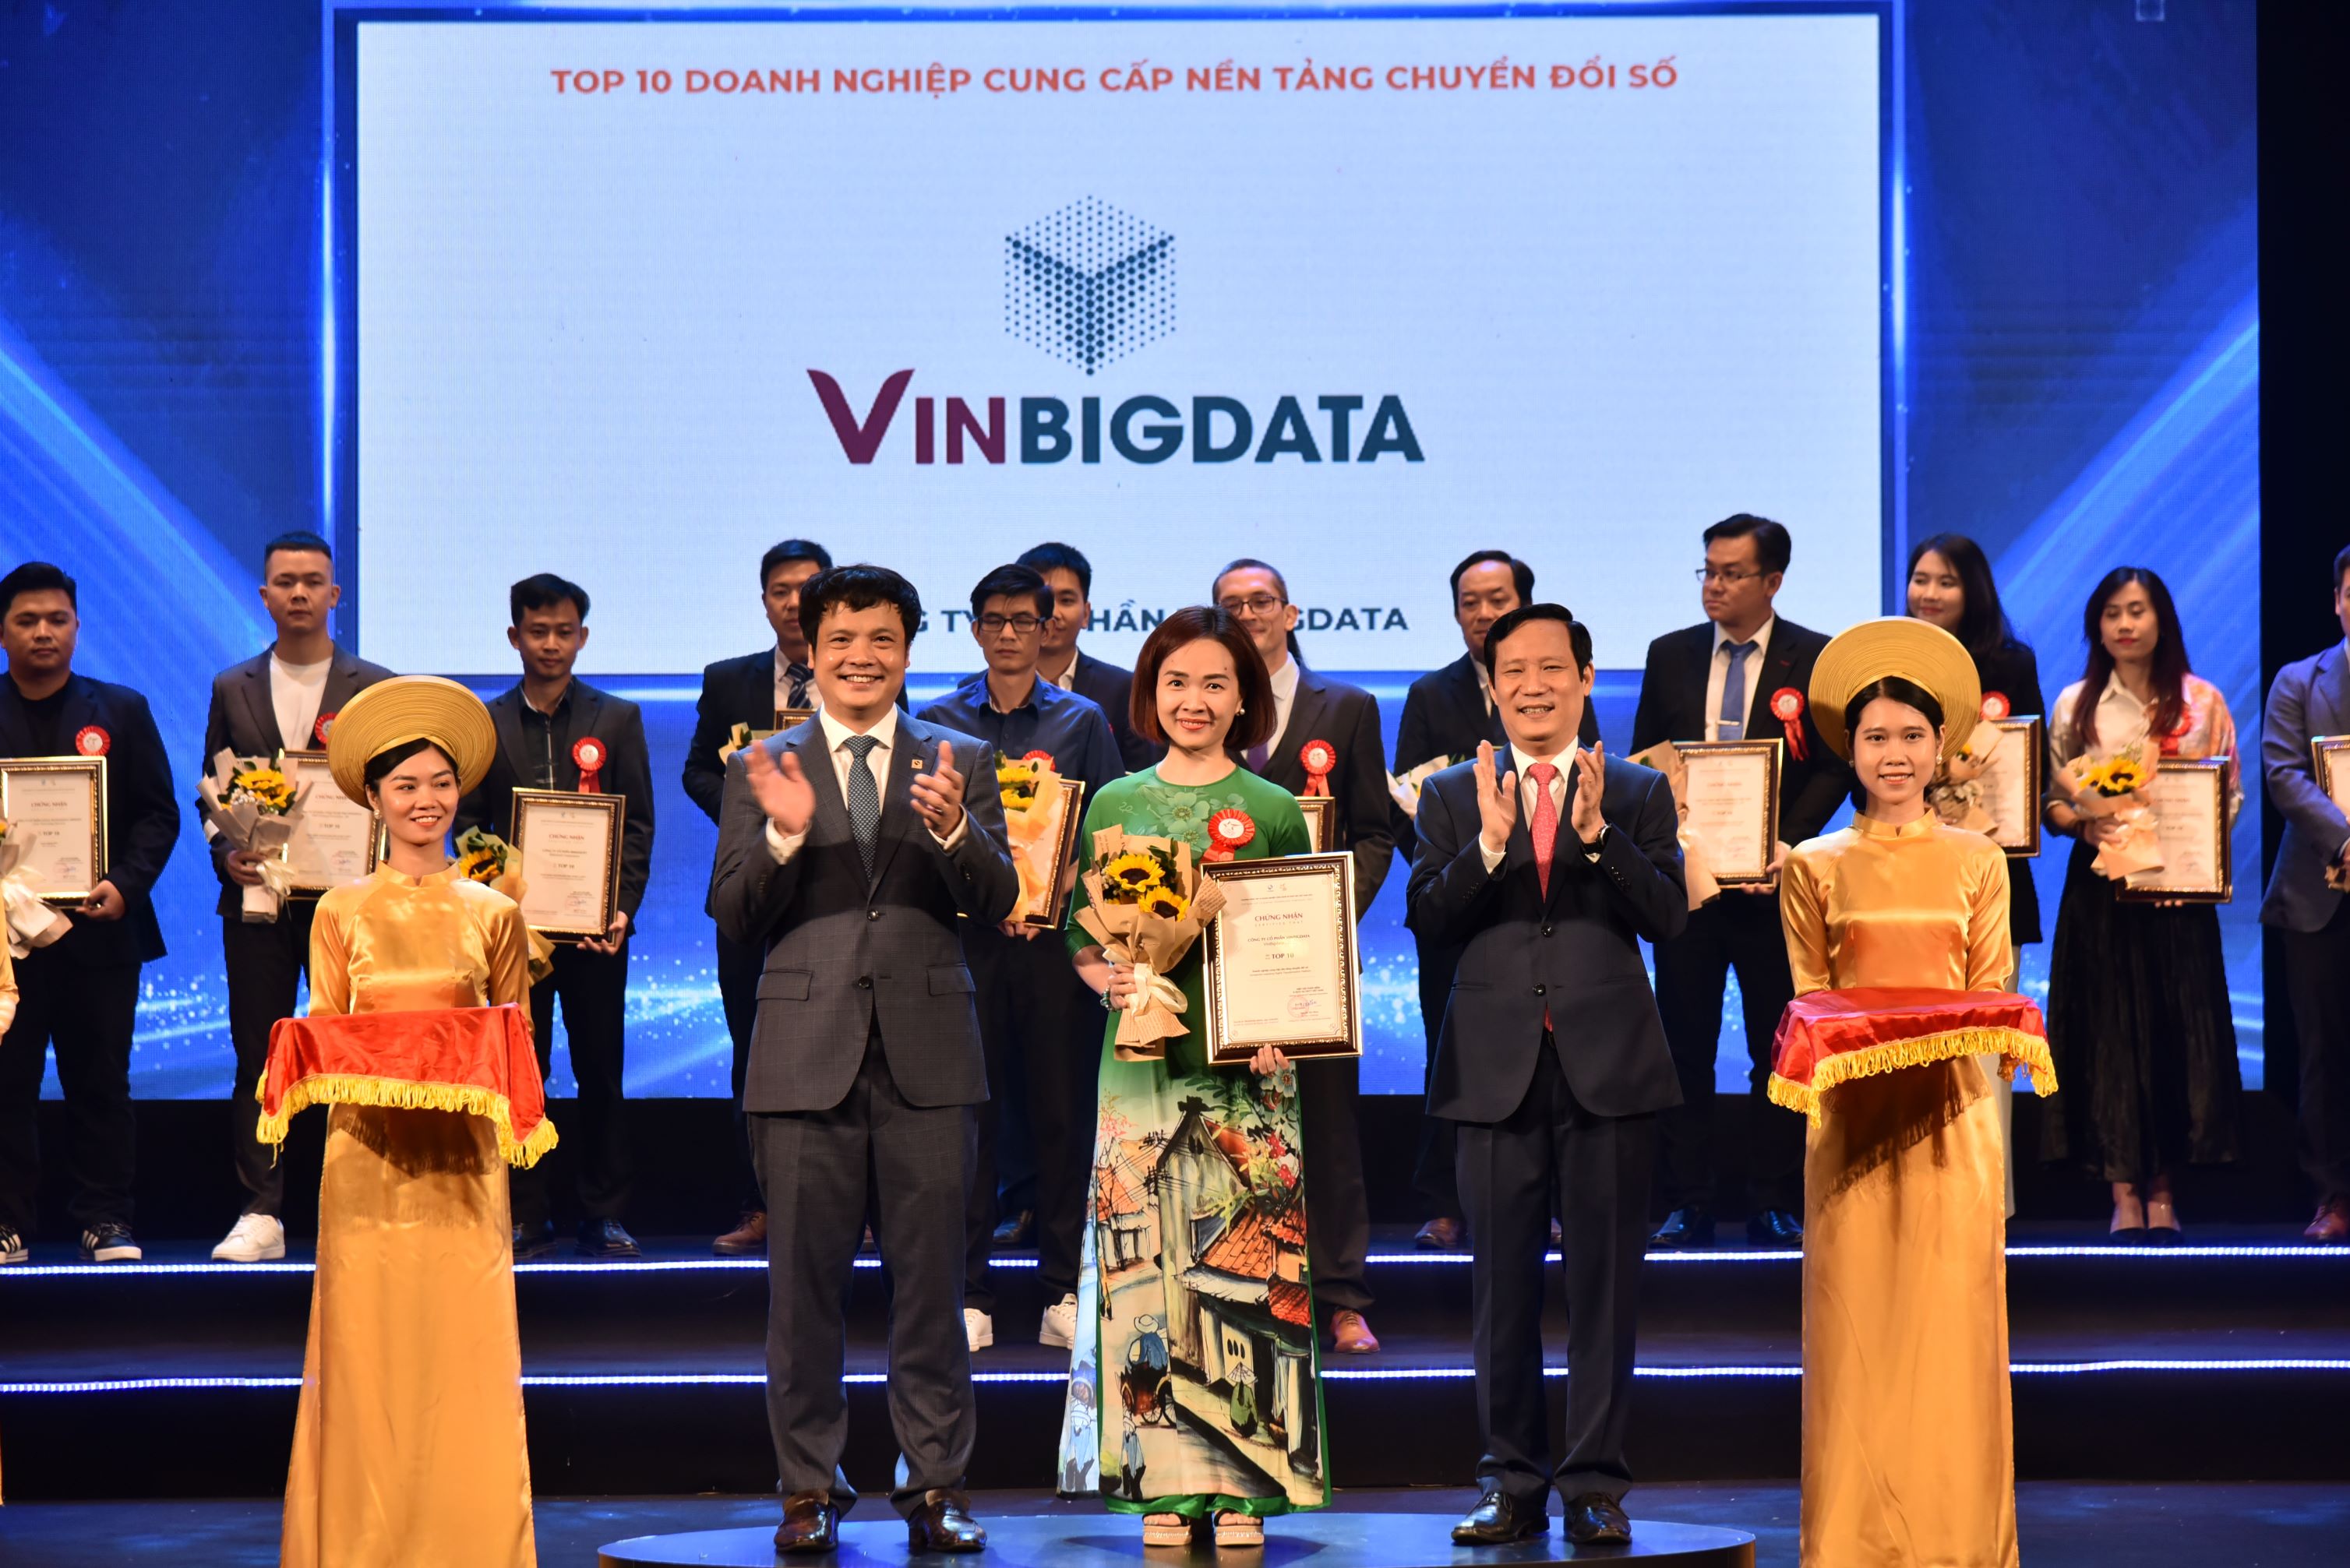 Ngày 22/09/2023, Công ty VinBigdata đã vinh dự nhận Giải thưởng ở hai hạng mục Top 10 Doanh nghiệp cung cấp nền tảng chuyển đổi số và Top 10 Doanh nghiệp A-IoT tại Lễ vinh danh giải thưởng Top 10 Doanh nghiệp Công nghệ số xuất sắc Việt Nam 2023 được tổ chức bởi Hiệp hội Phần mềm và Dịch vụ CNTT Việt Nam (VINASA).